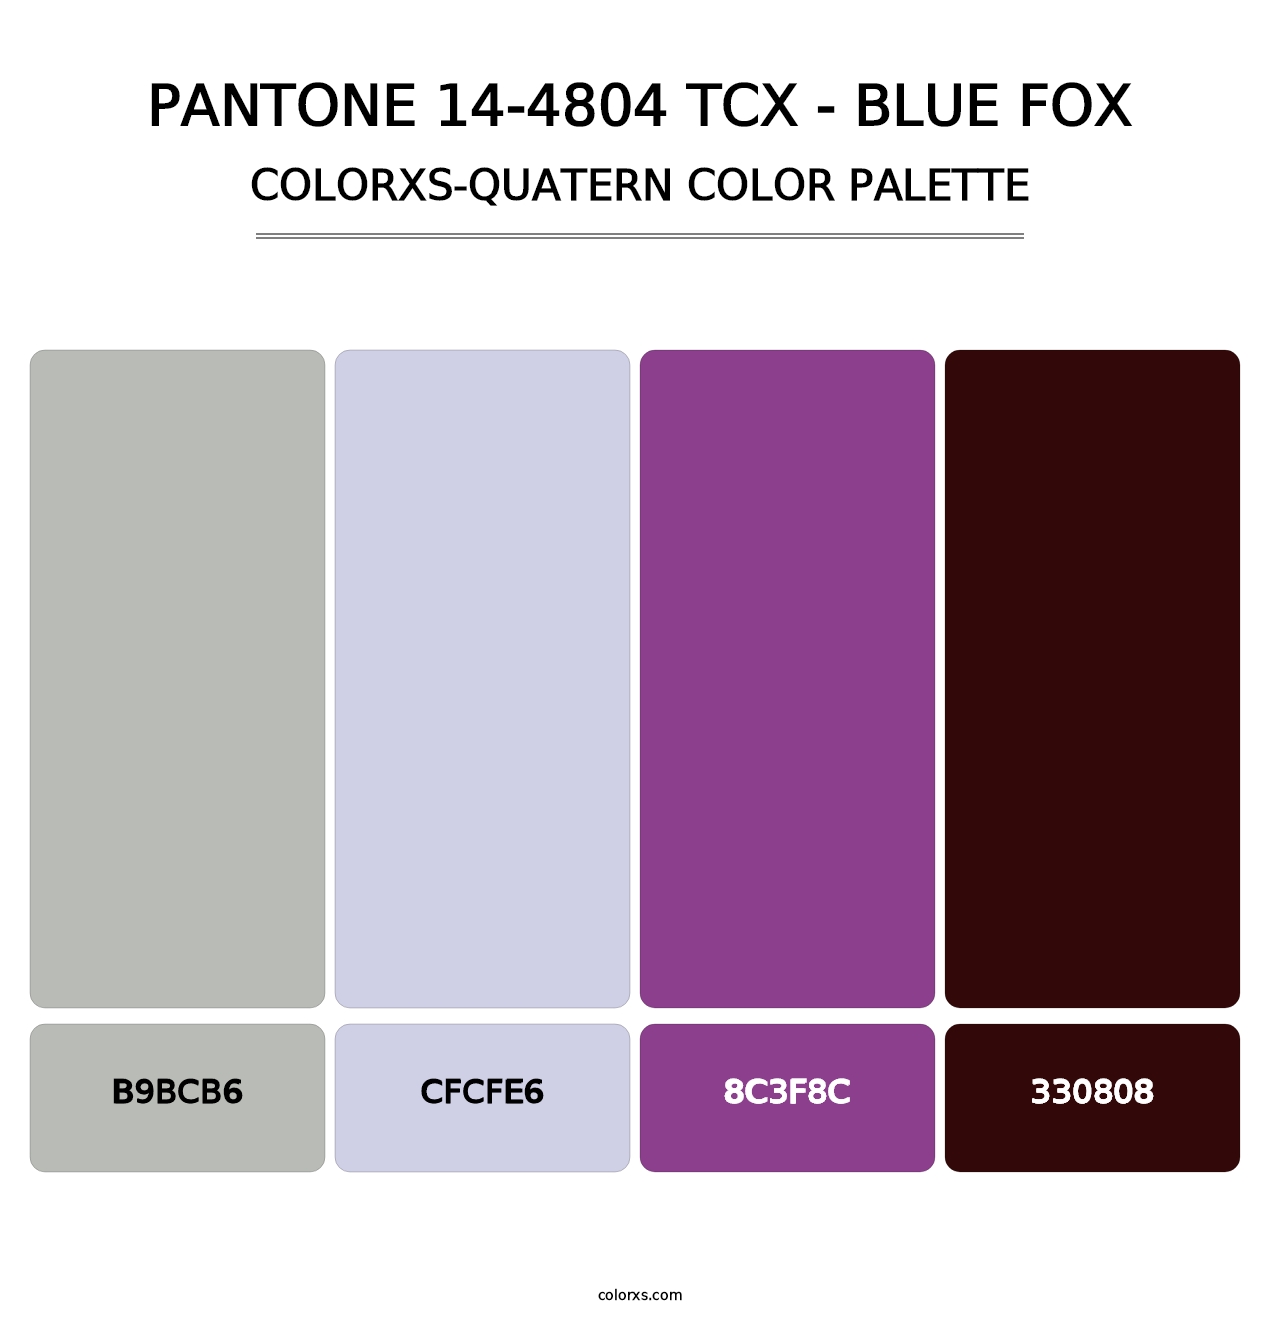 PANTONE 14-4804 TCX - Blue Fox - Colorxs Quatern Palette